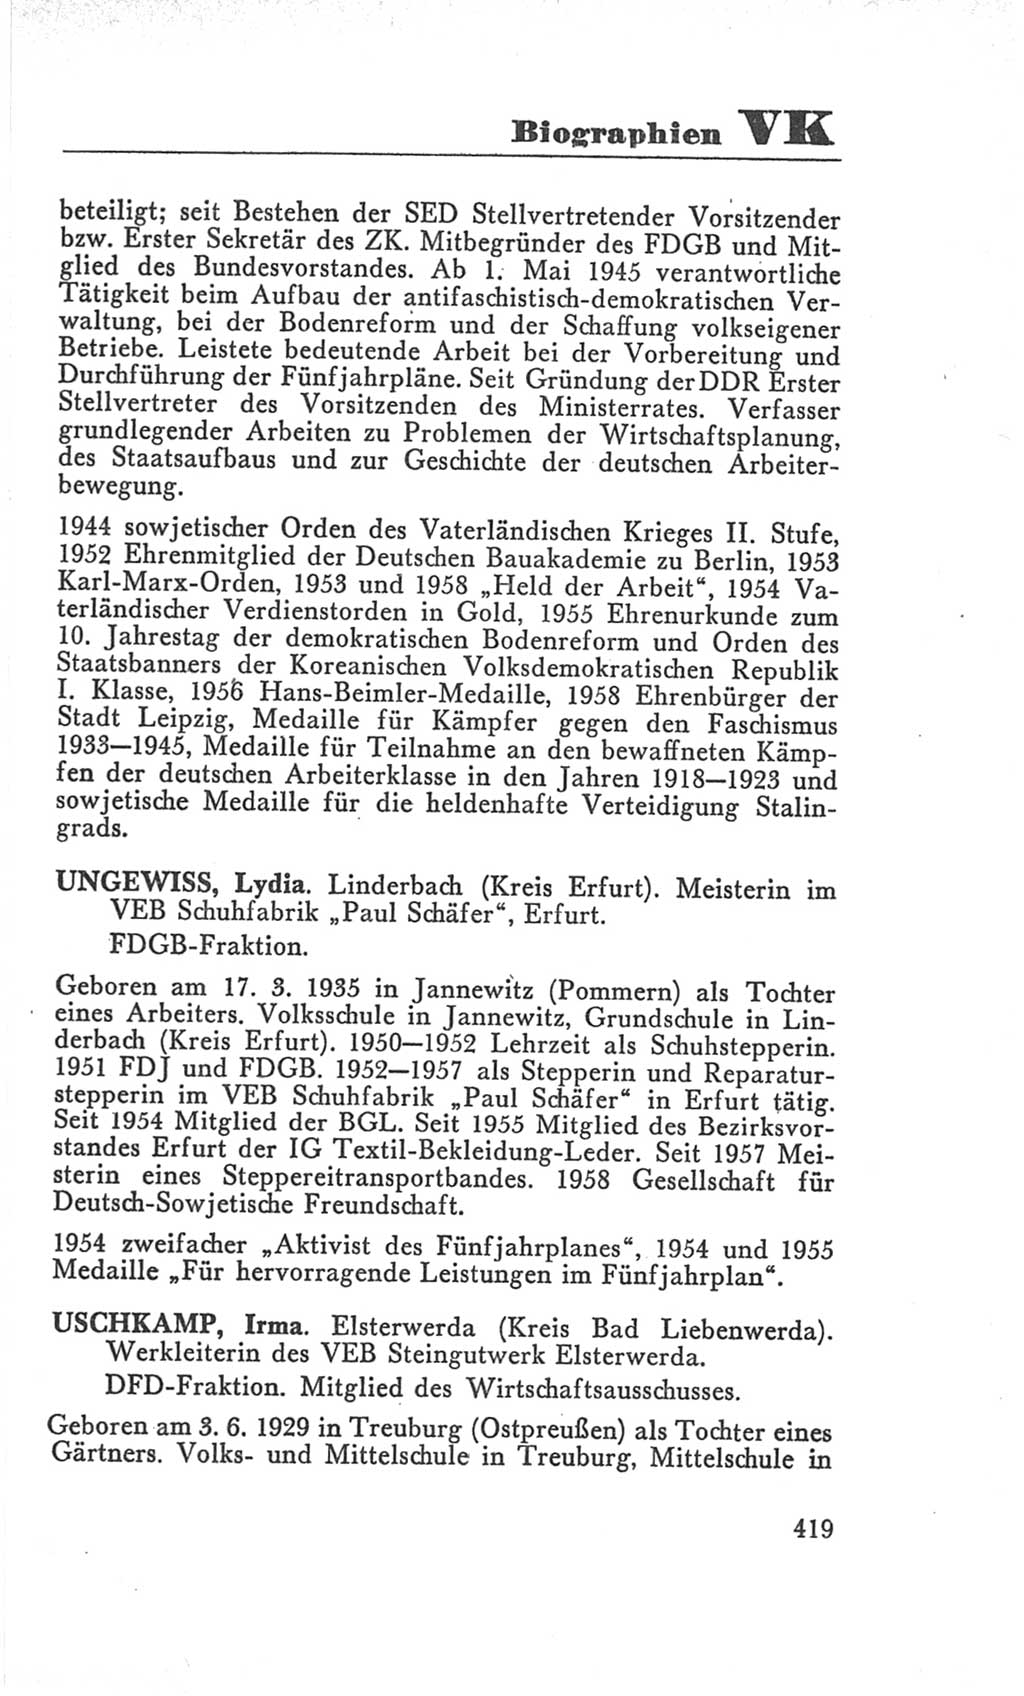 Handbuch der Volkskammer (VK) der Deutschen Demokratischen Republik (DDR), 3. Wahlperiode 1958-1963, Seite 419 (Hdb. VK. DDR 3. WP. 1958-1963, S. 419)